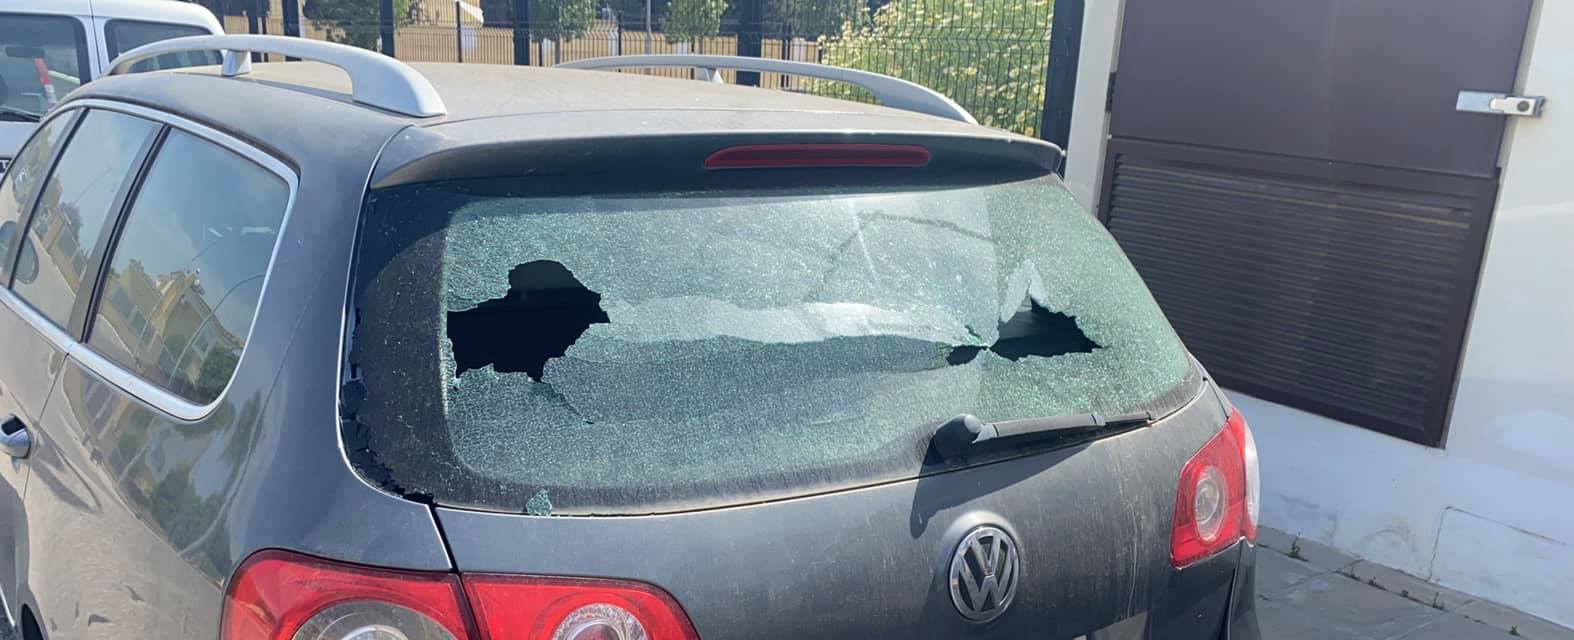 Un niño dejó una nota pidiendo disculpas en el auto al que le rompió un vidrio